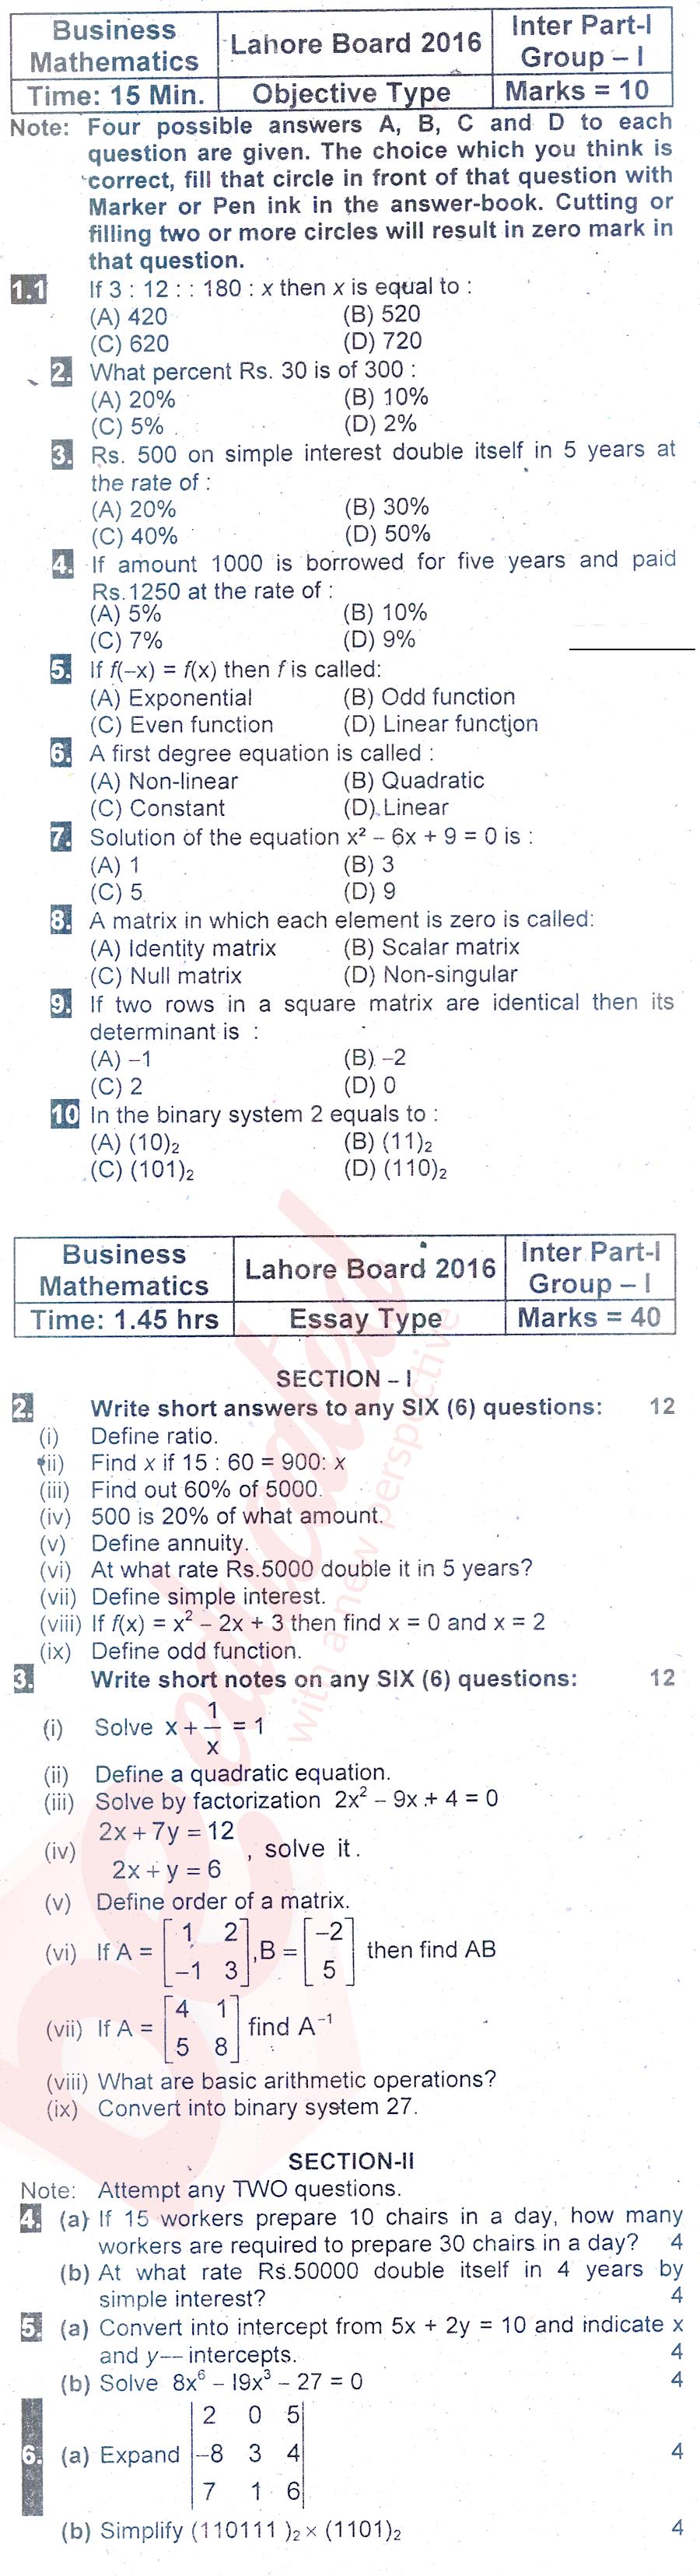 Business Mathematics ICOM Part 1 Past Paper Group 1 BISE Lahore 2016